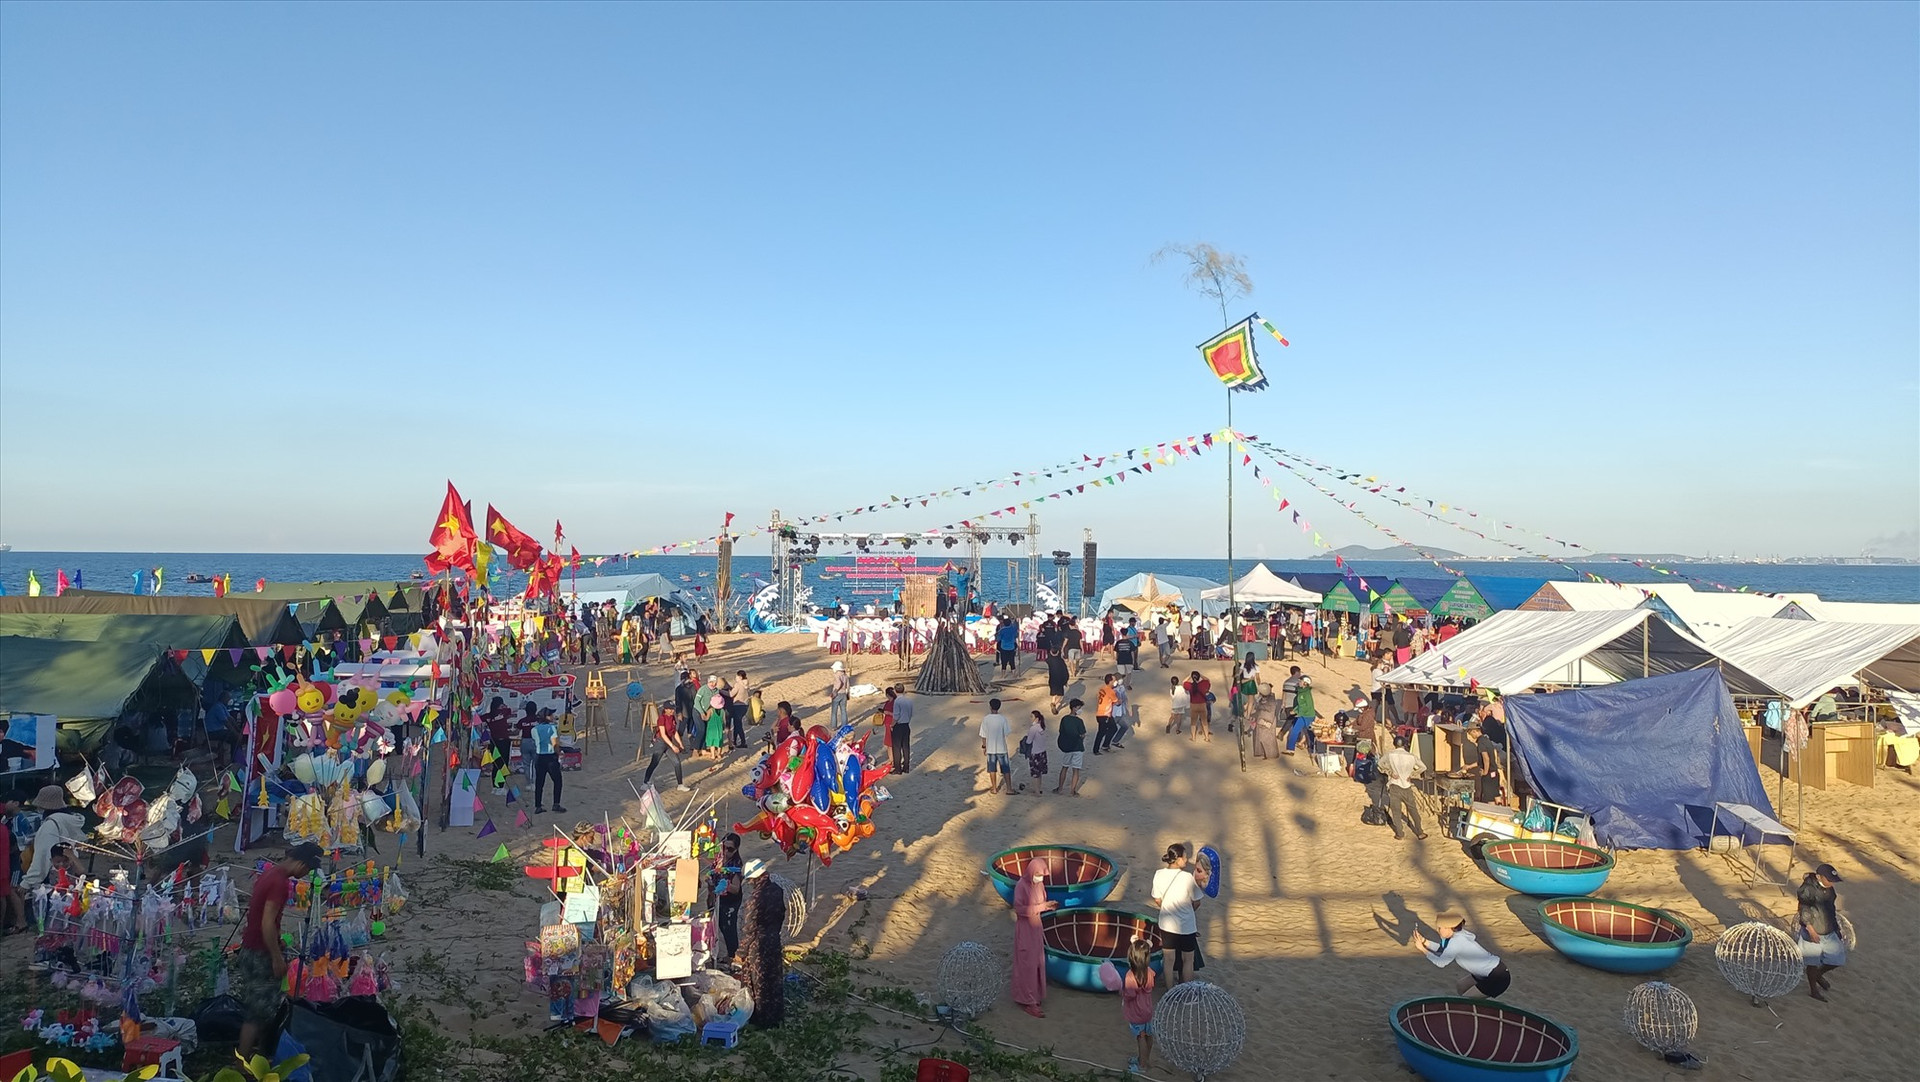 Đông đảo người dân đến tham gia Ngày hội và cổ vũ cho các vận động viên thi đấu giải bóng chuyền, kéo co nam nữ tại biển Rạng. Ảnh: N.Q